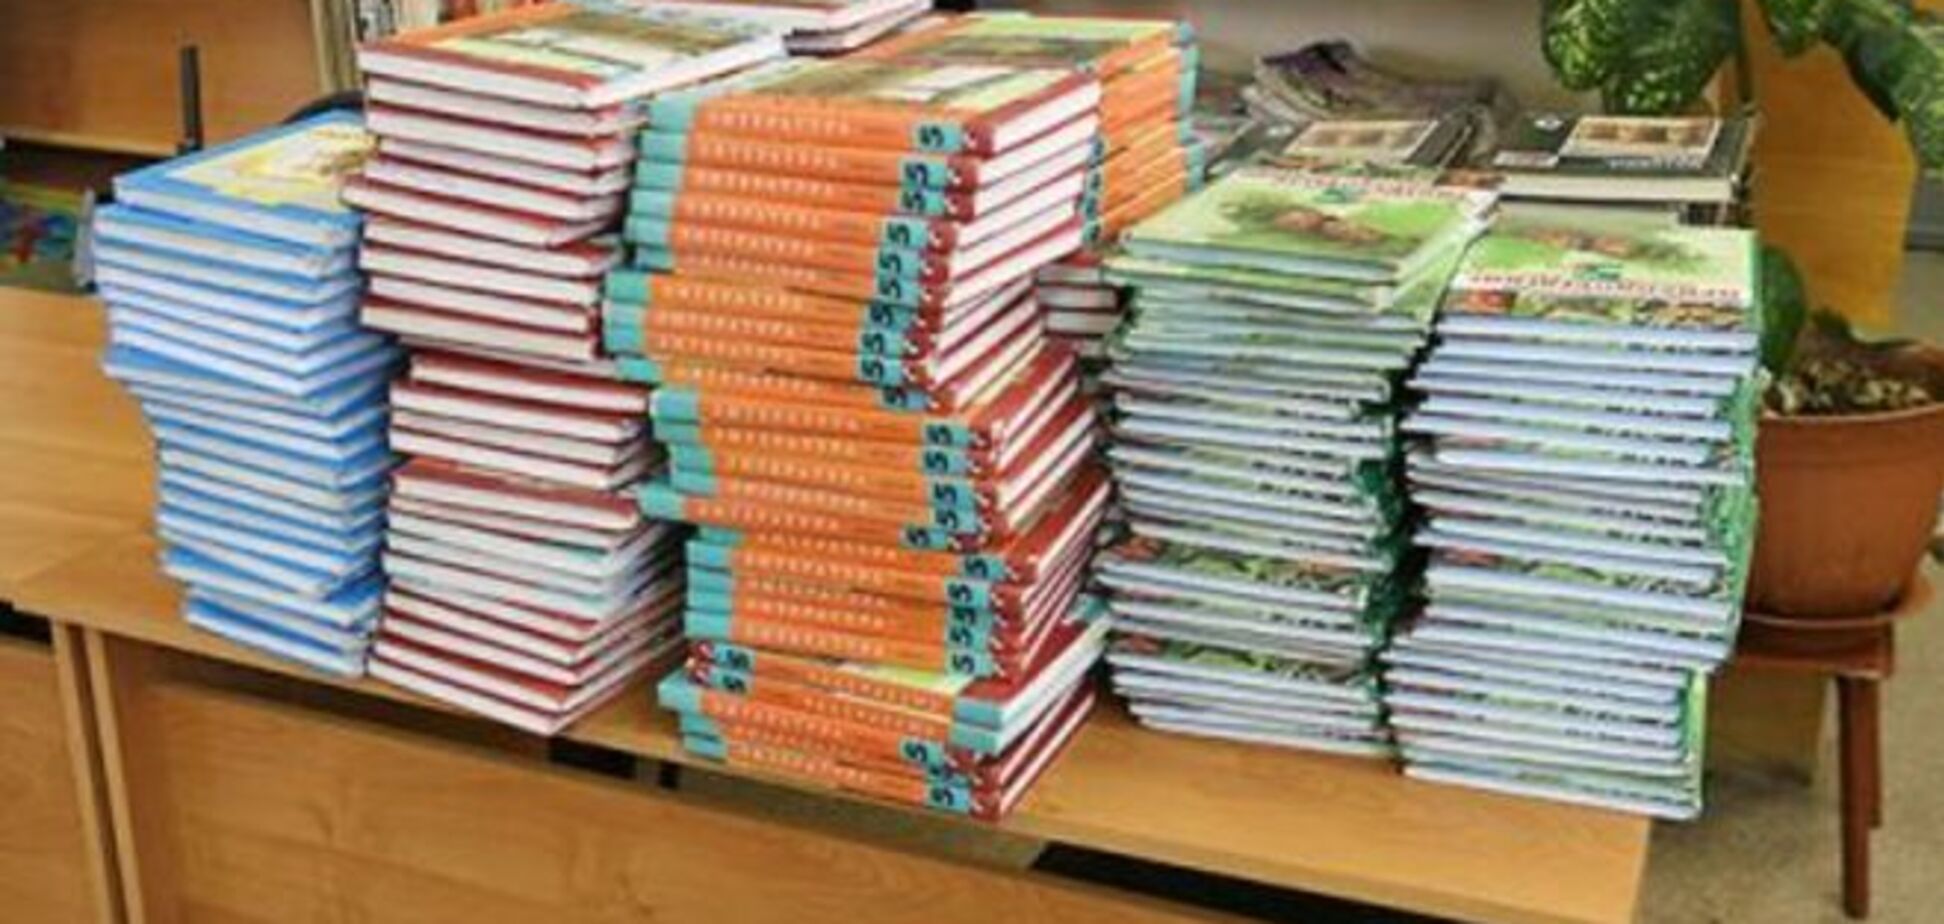 Все учебники для украинских школьников станут платными: комплект обойдется в 700 грн